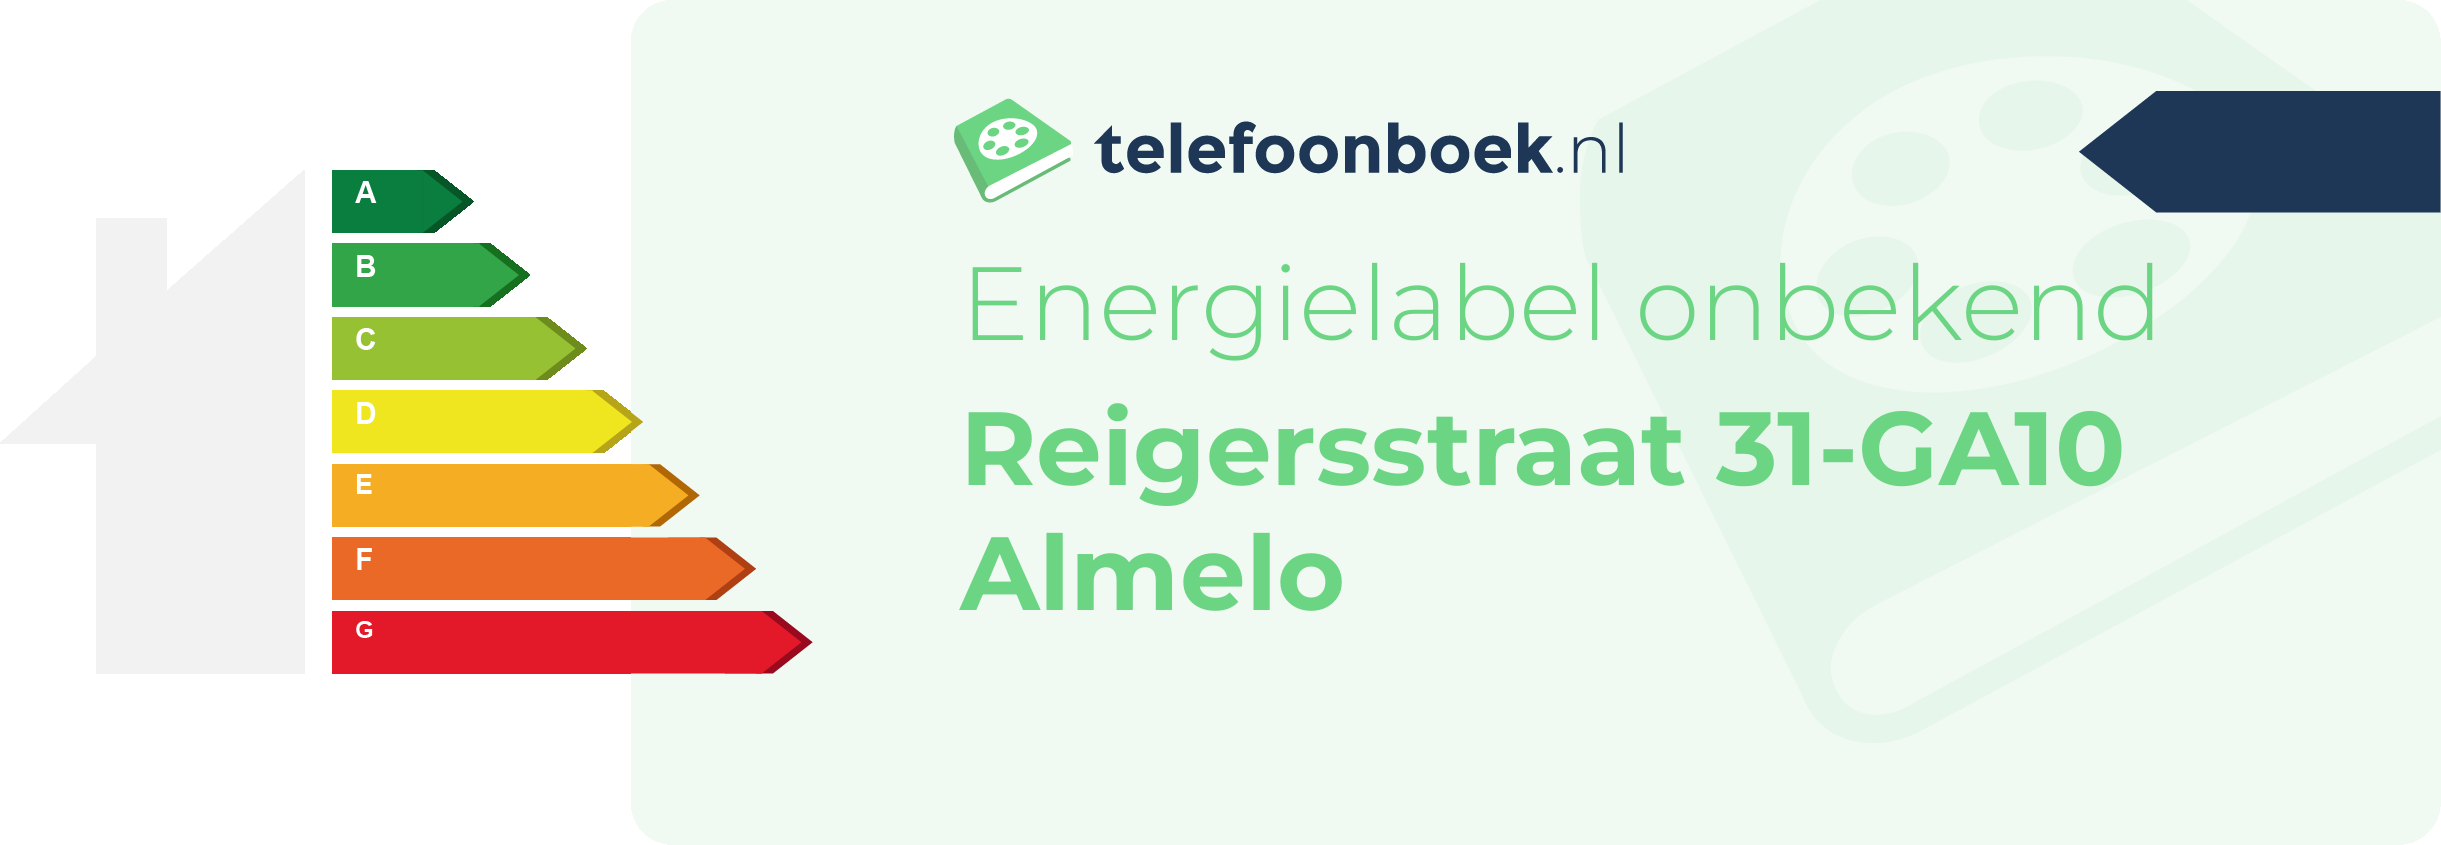 Energielabel Reigersstraat 31-GA10 Almelo